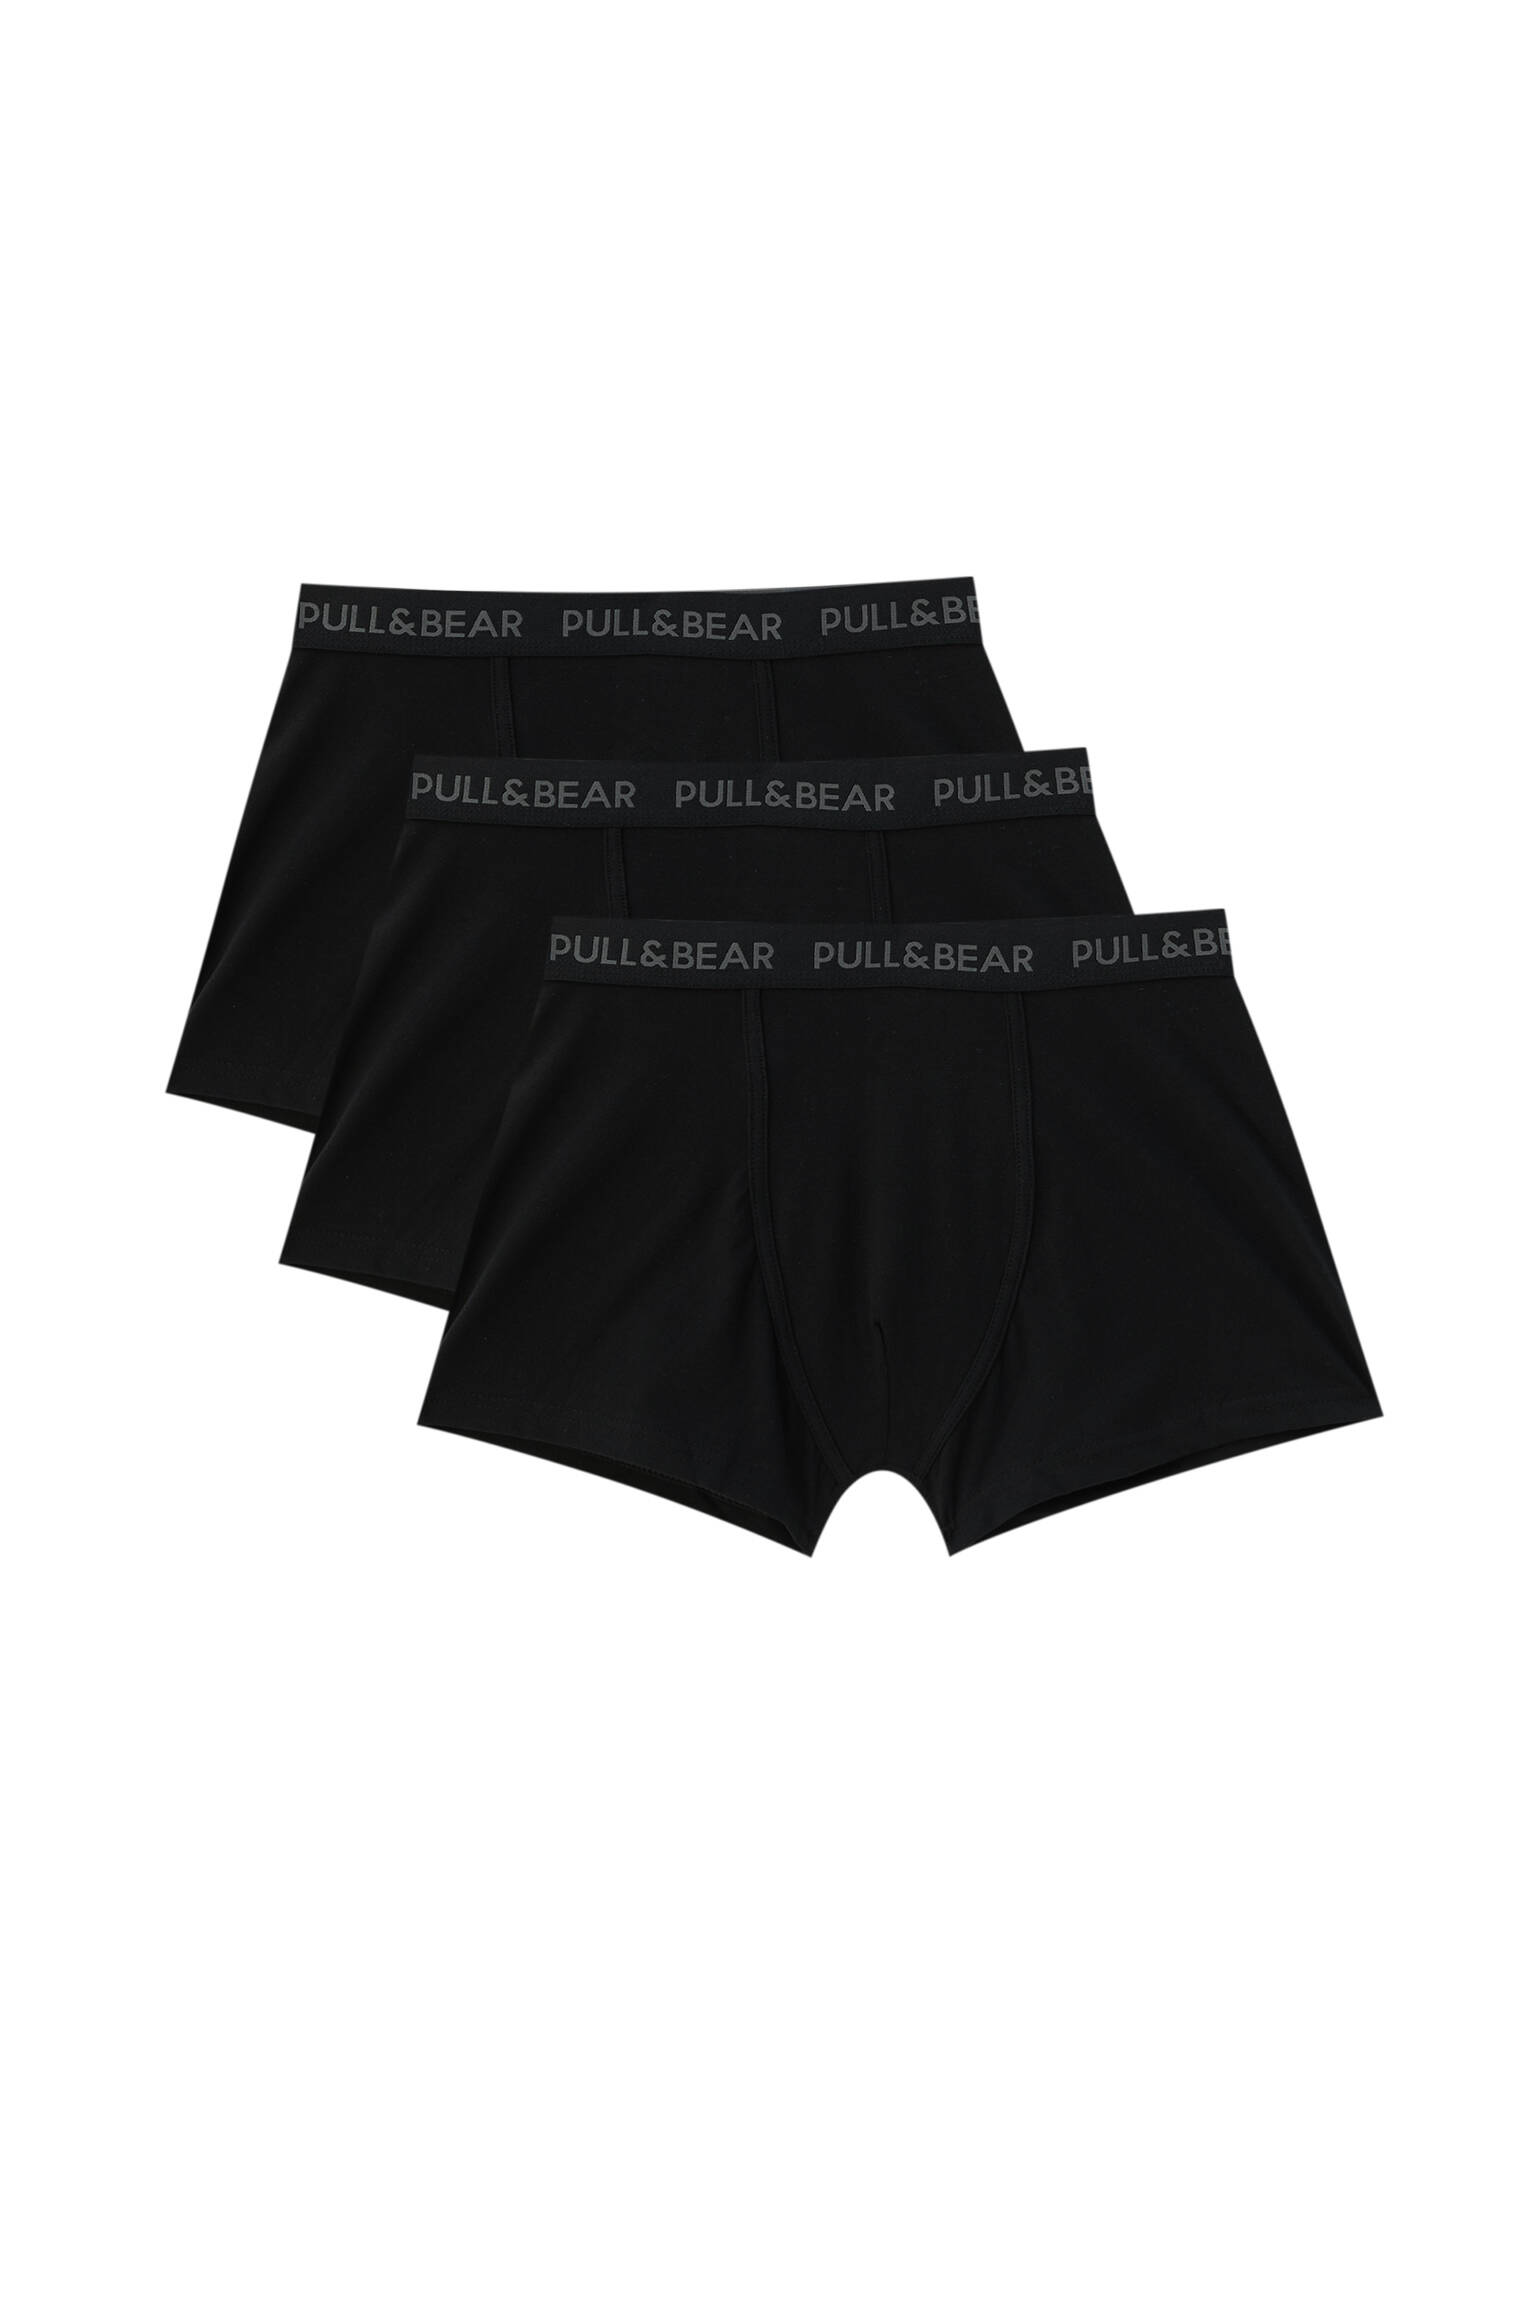 Pull&bear Homme Lot De Trois Boxers En Tissu élastique Avec Logo Contrastant à La Taille. Noir L